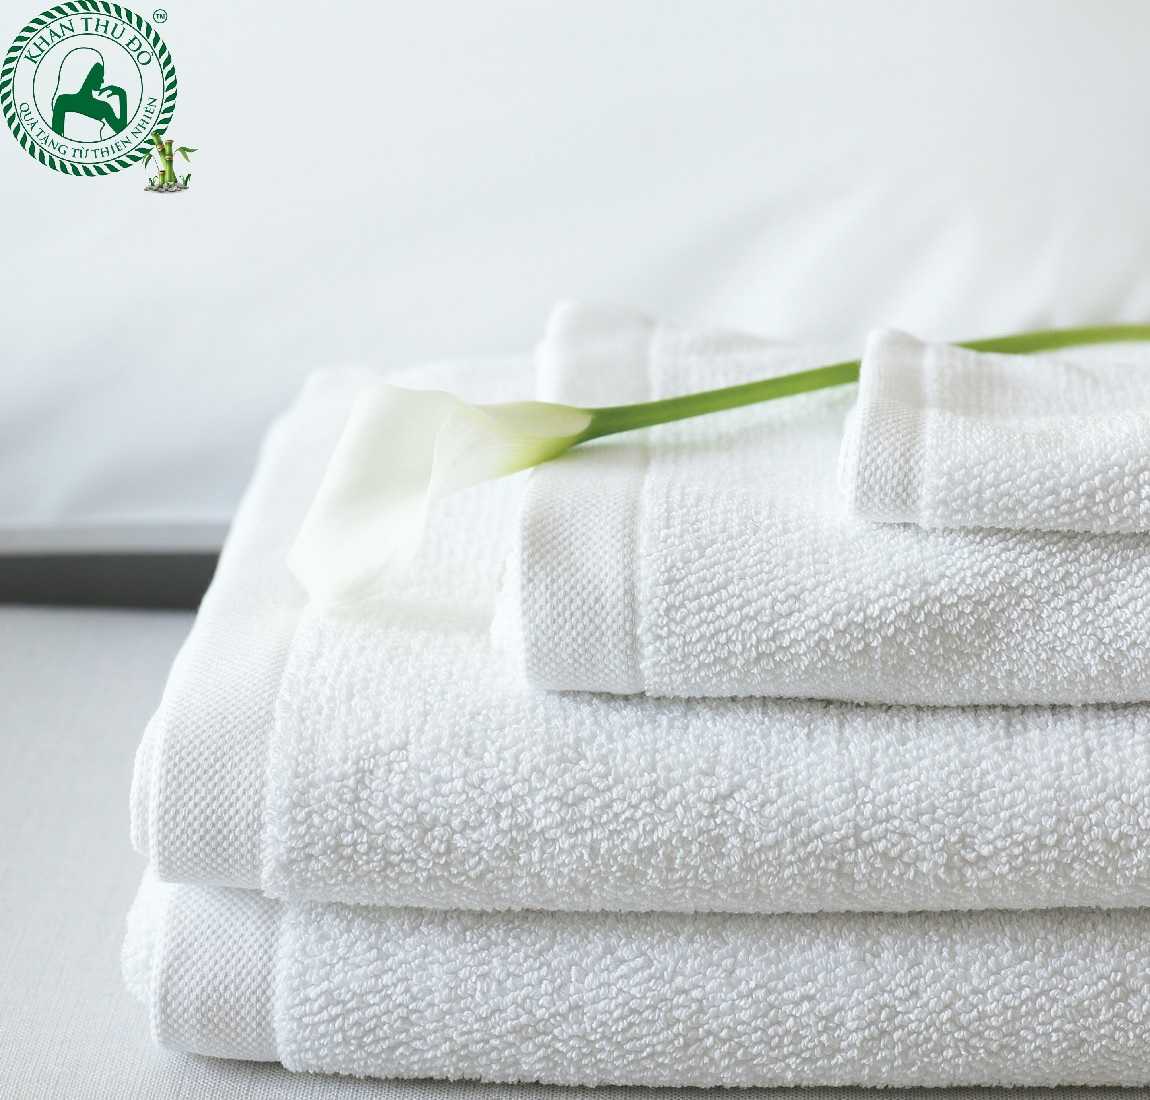 Xưởng khăn Thủ Đô là đơn vị sản xuất khăn mặt, khăn tắm giá rẻ chất lượng